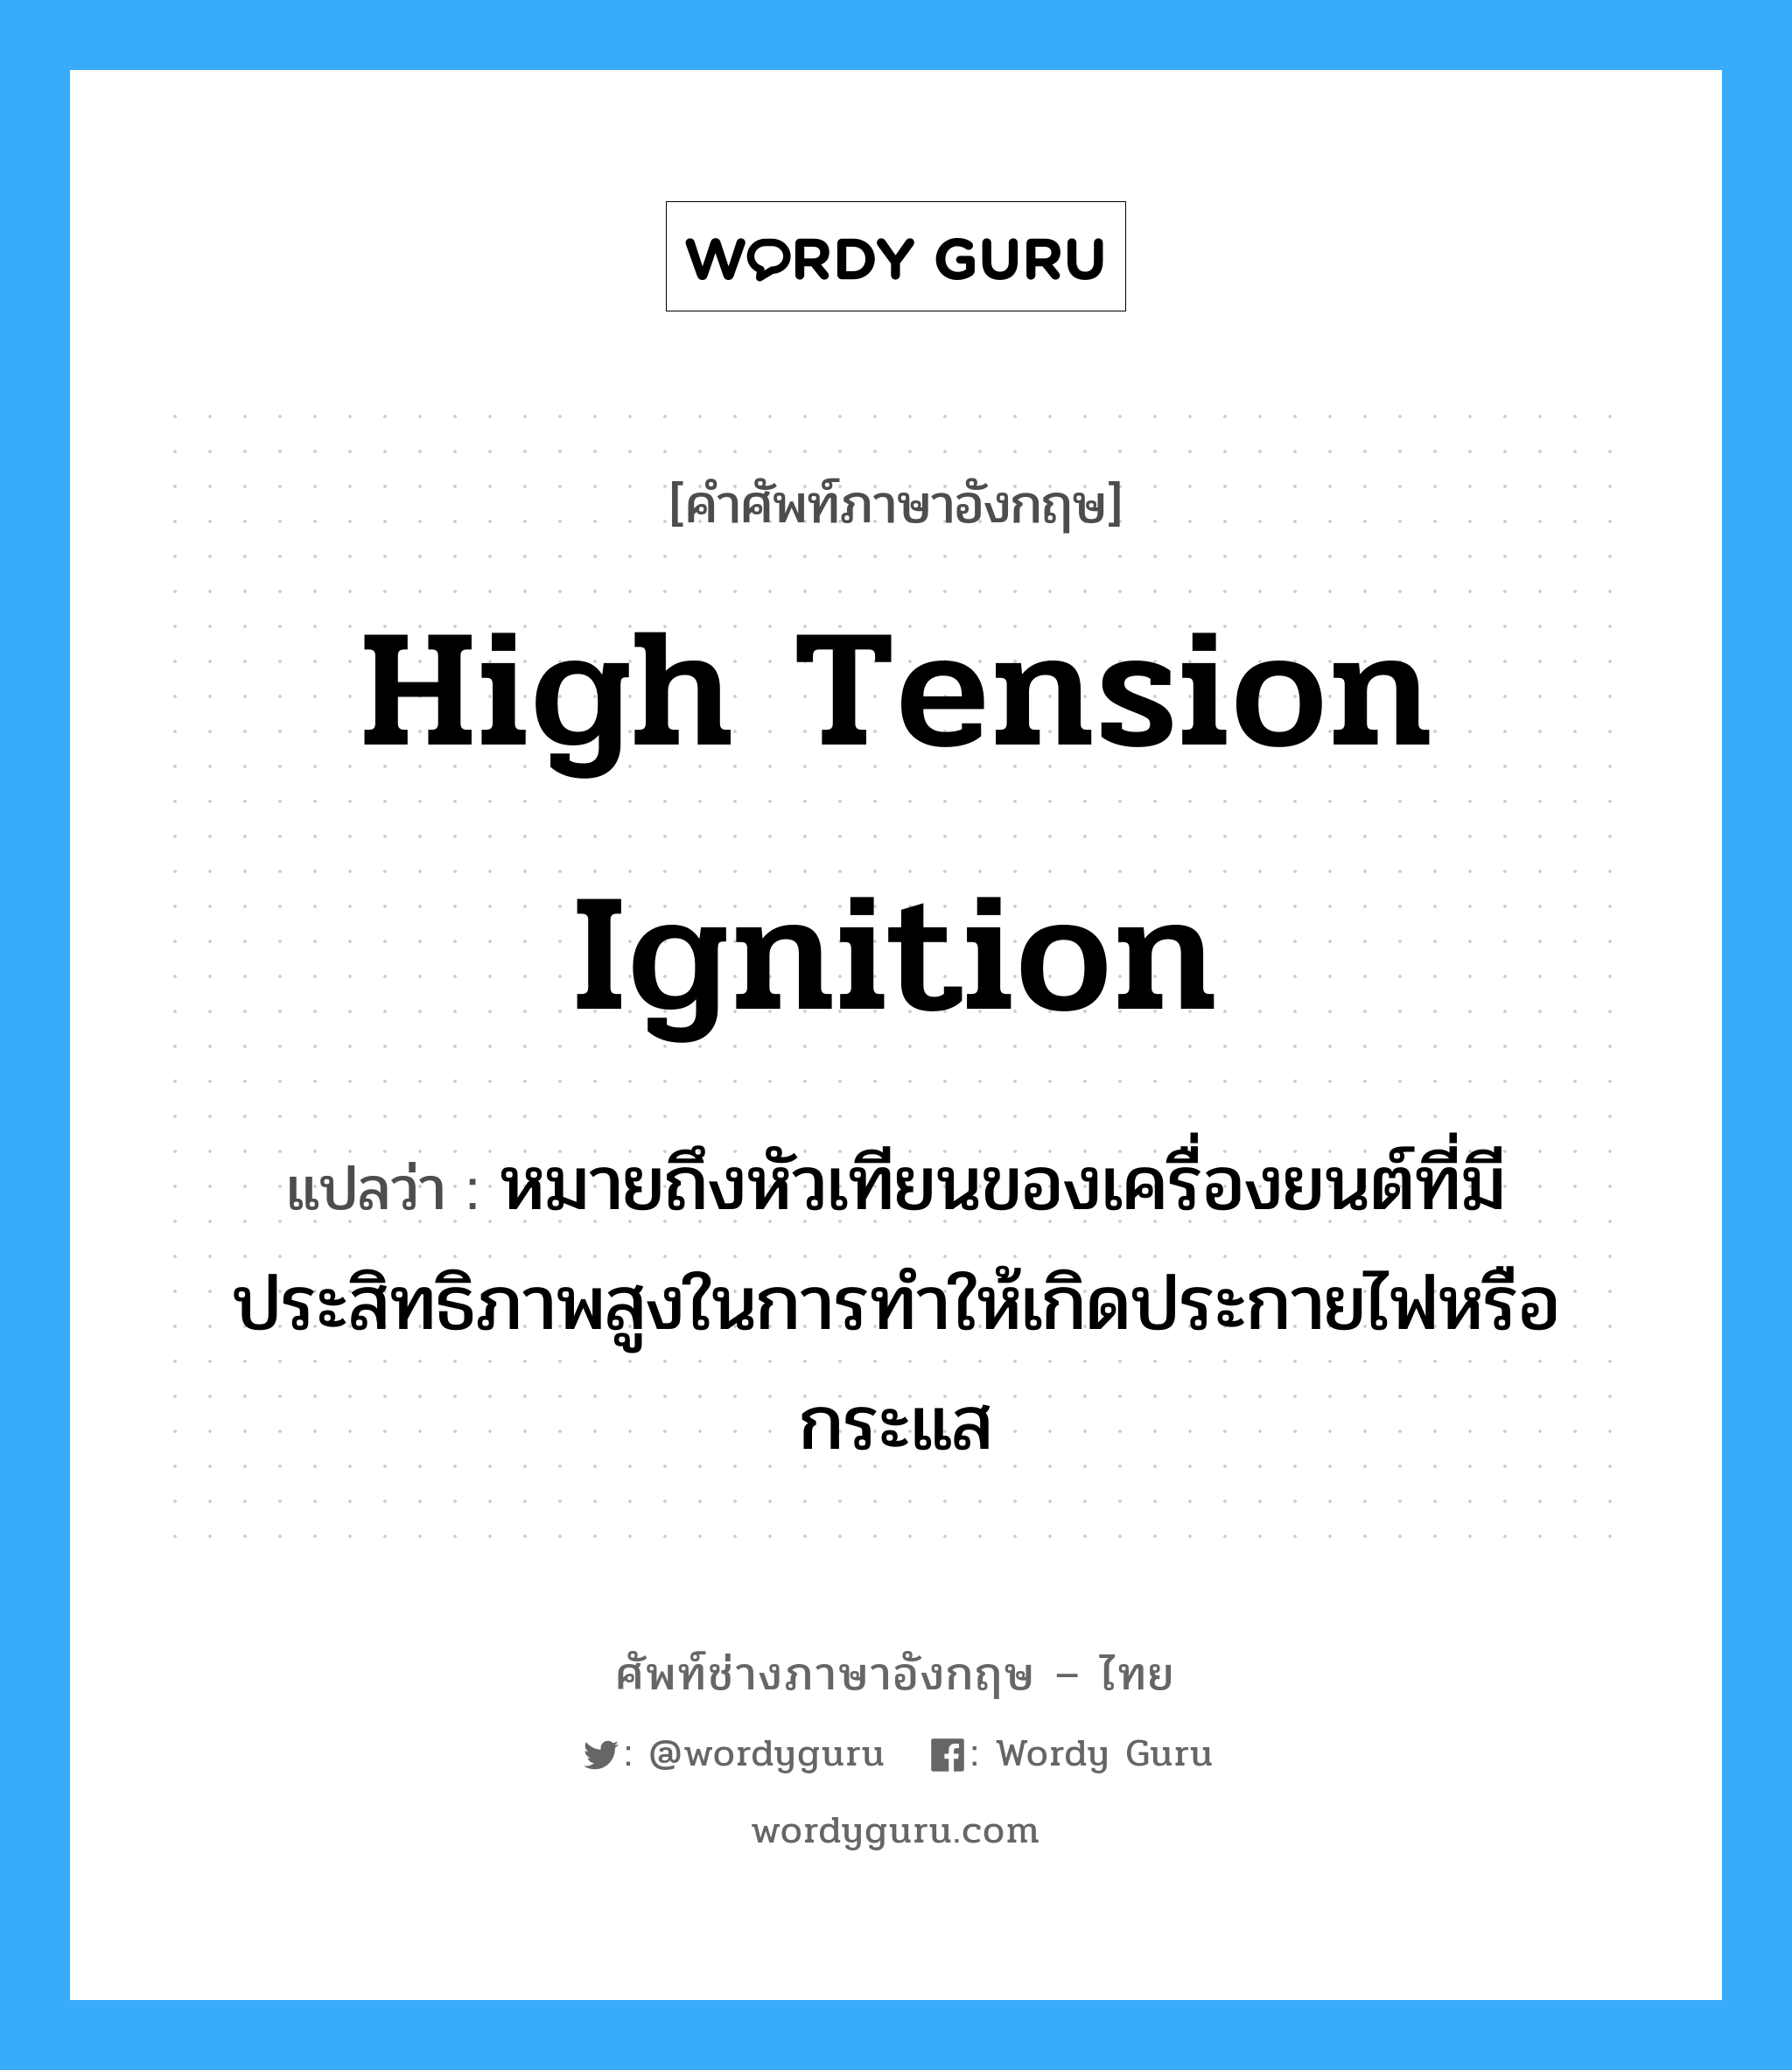 high tension ignition แปลว่า?, คำศัพท์ช่างภาษาอังกฤษ - ไทย high tension ignition คำศัพท์ภาษาอังกฤษ high tension ignition แปลว่า หมายถึงหัวเทียนของเครื่องยนต์ที่มีประสิทธิภาพสูงในการทำให้เกิดประกายไฟหรือกระแส